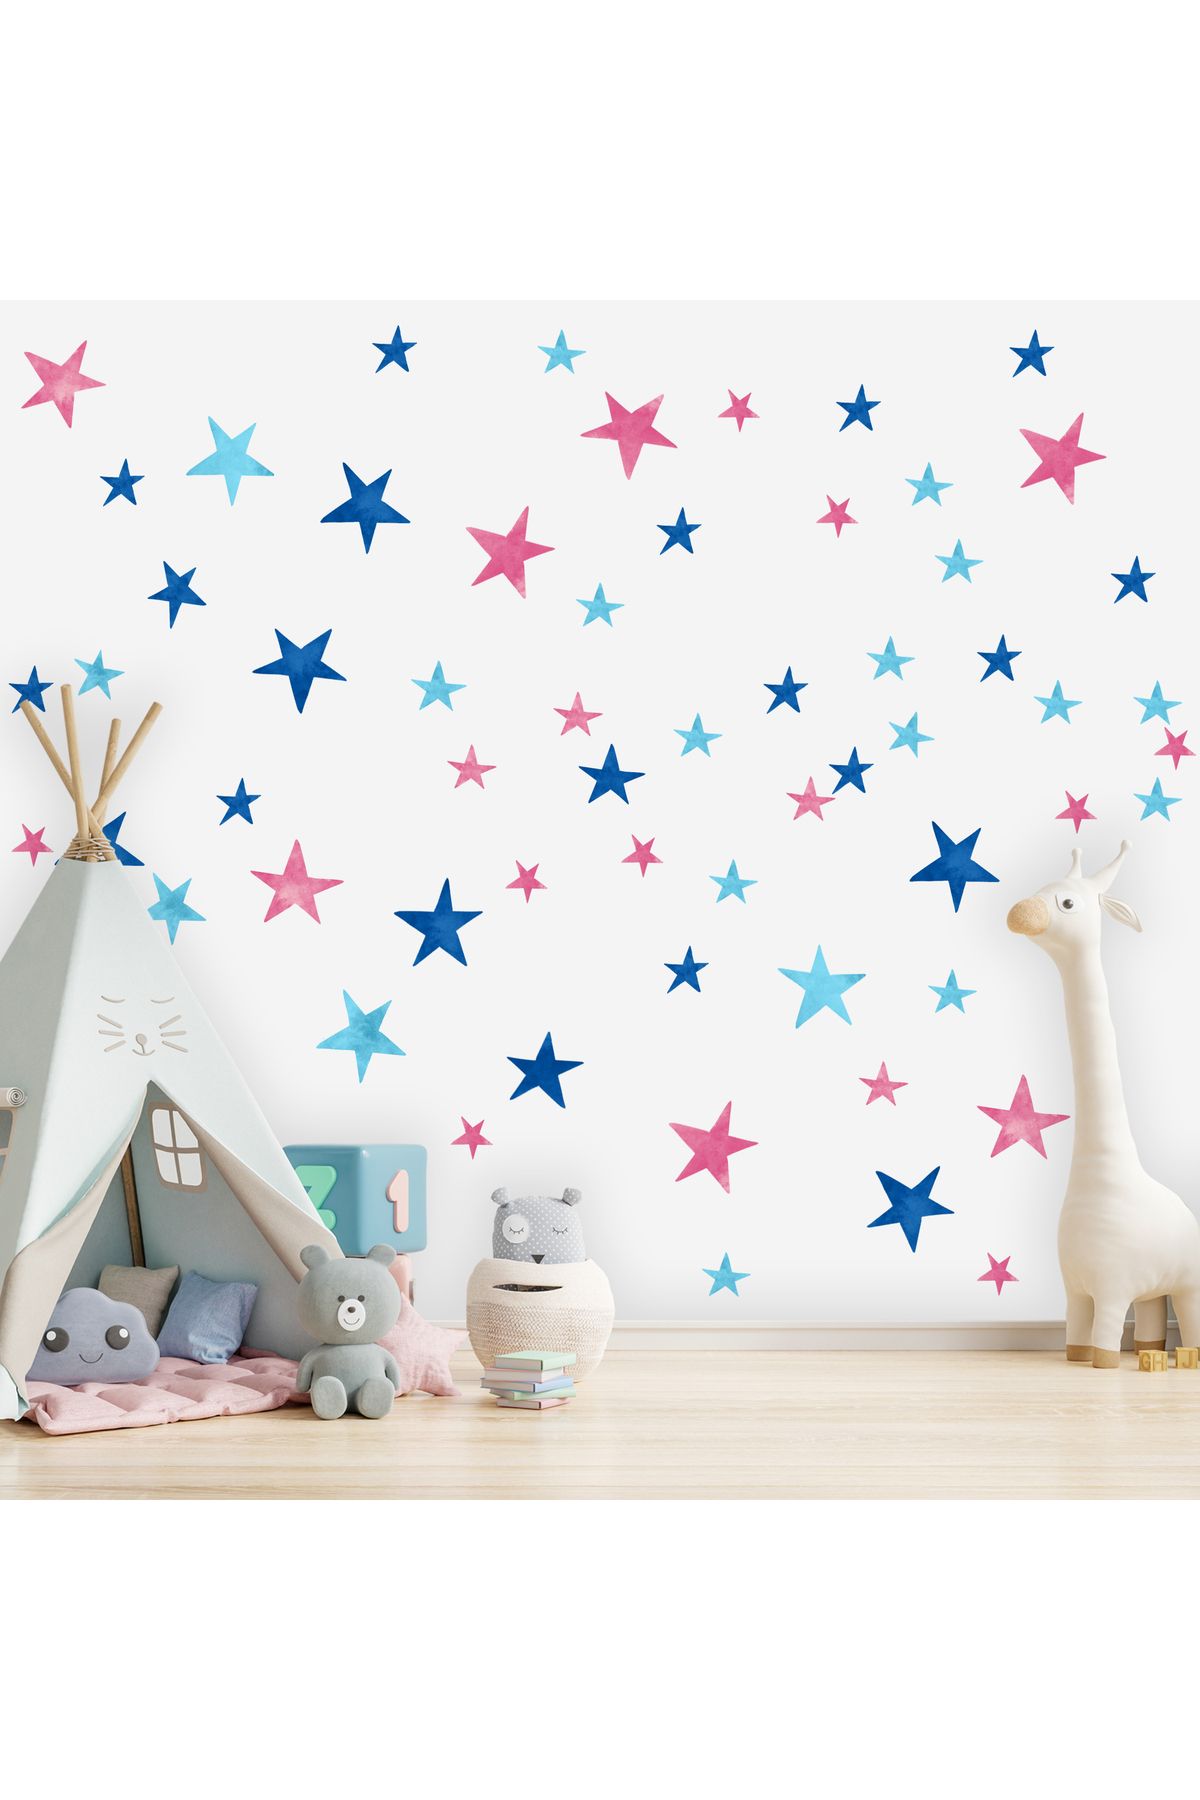 dreamwall Çocuk Odası 3 Farklı Renkli Yıldızlar Desenli Set (57 parça) Kumaş Duvar Sticker